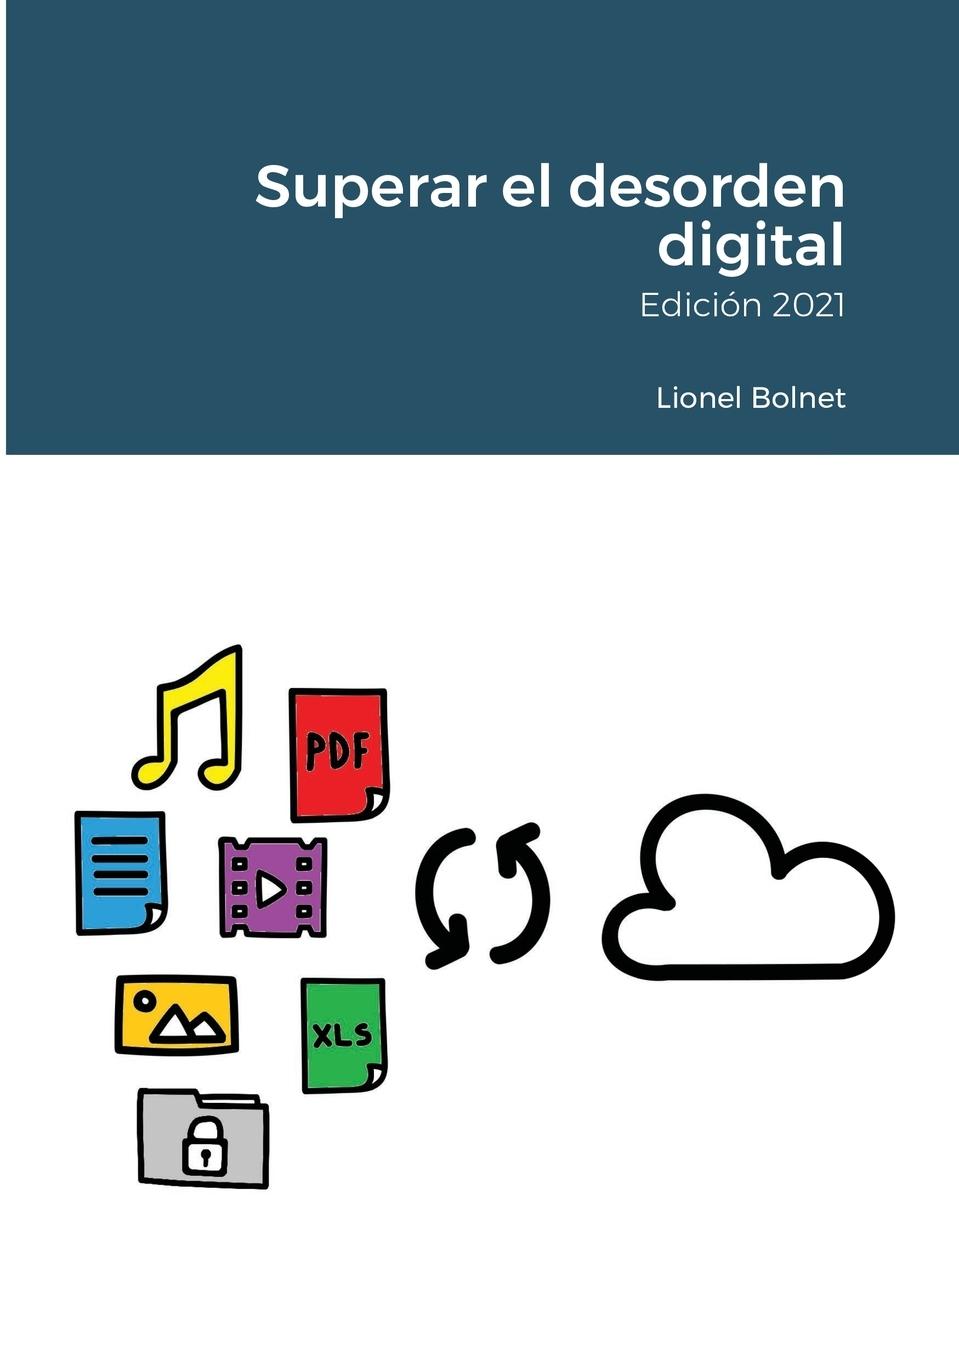 Knjiga Superar el desorden digital 